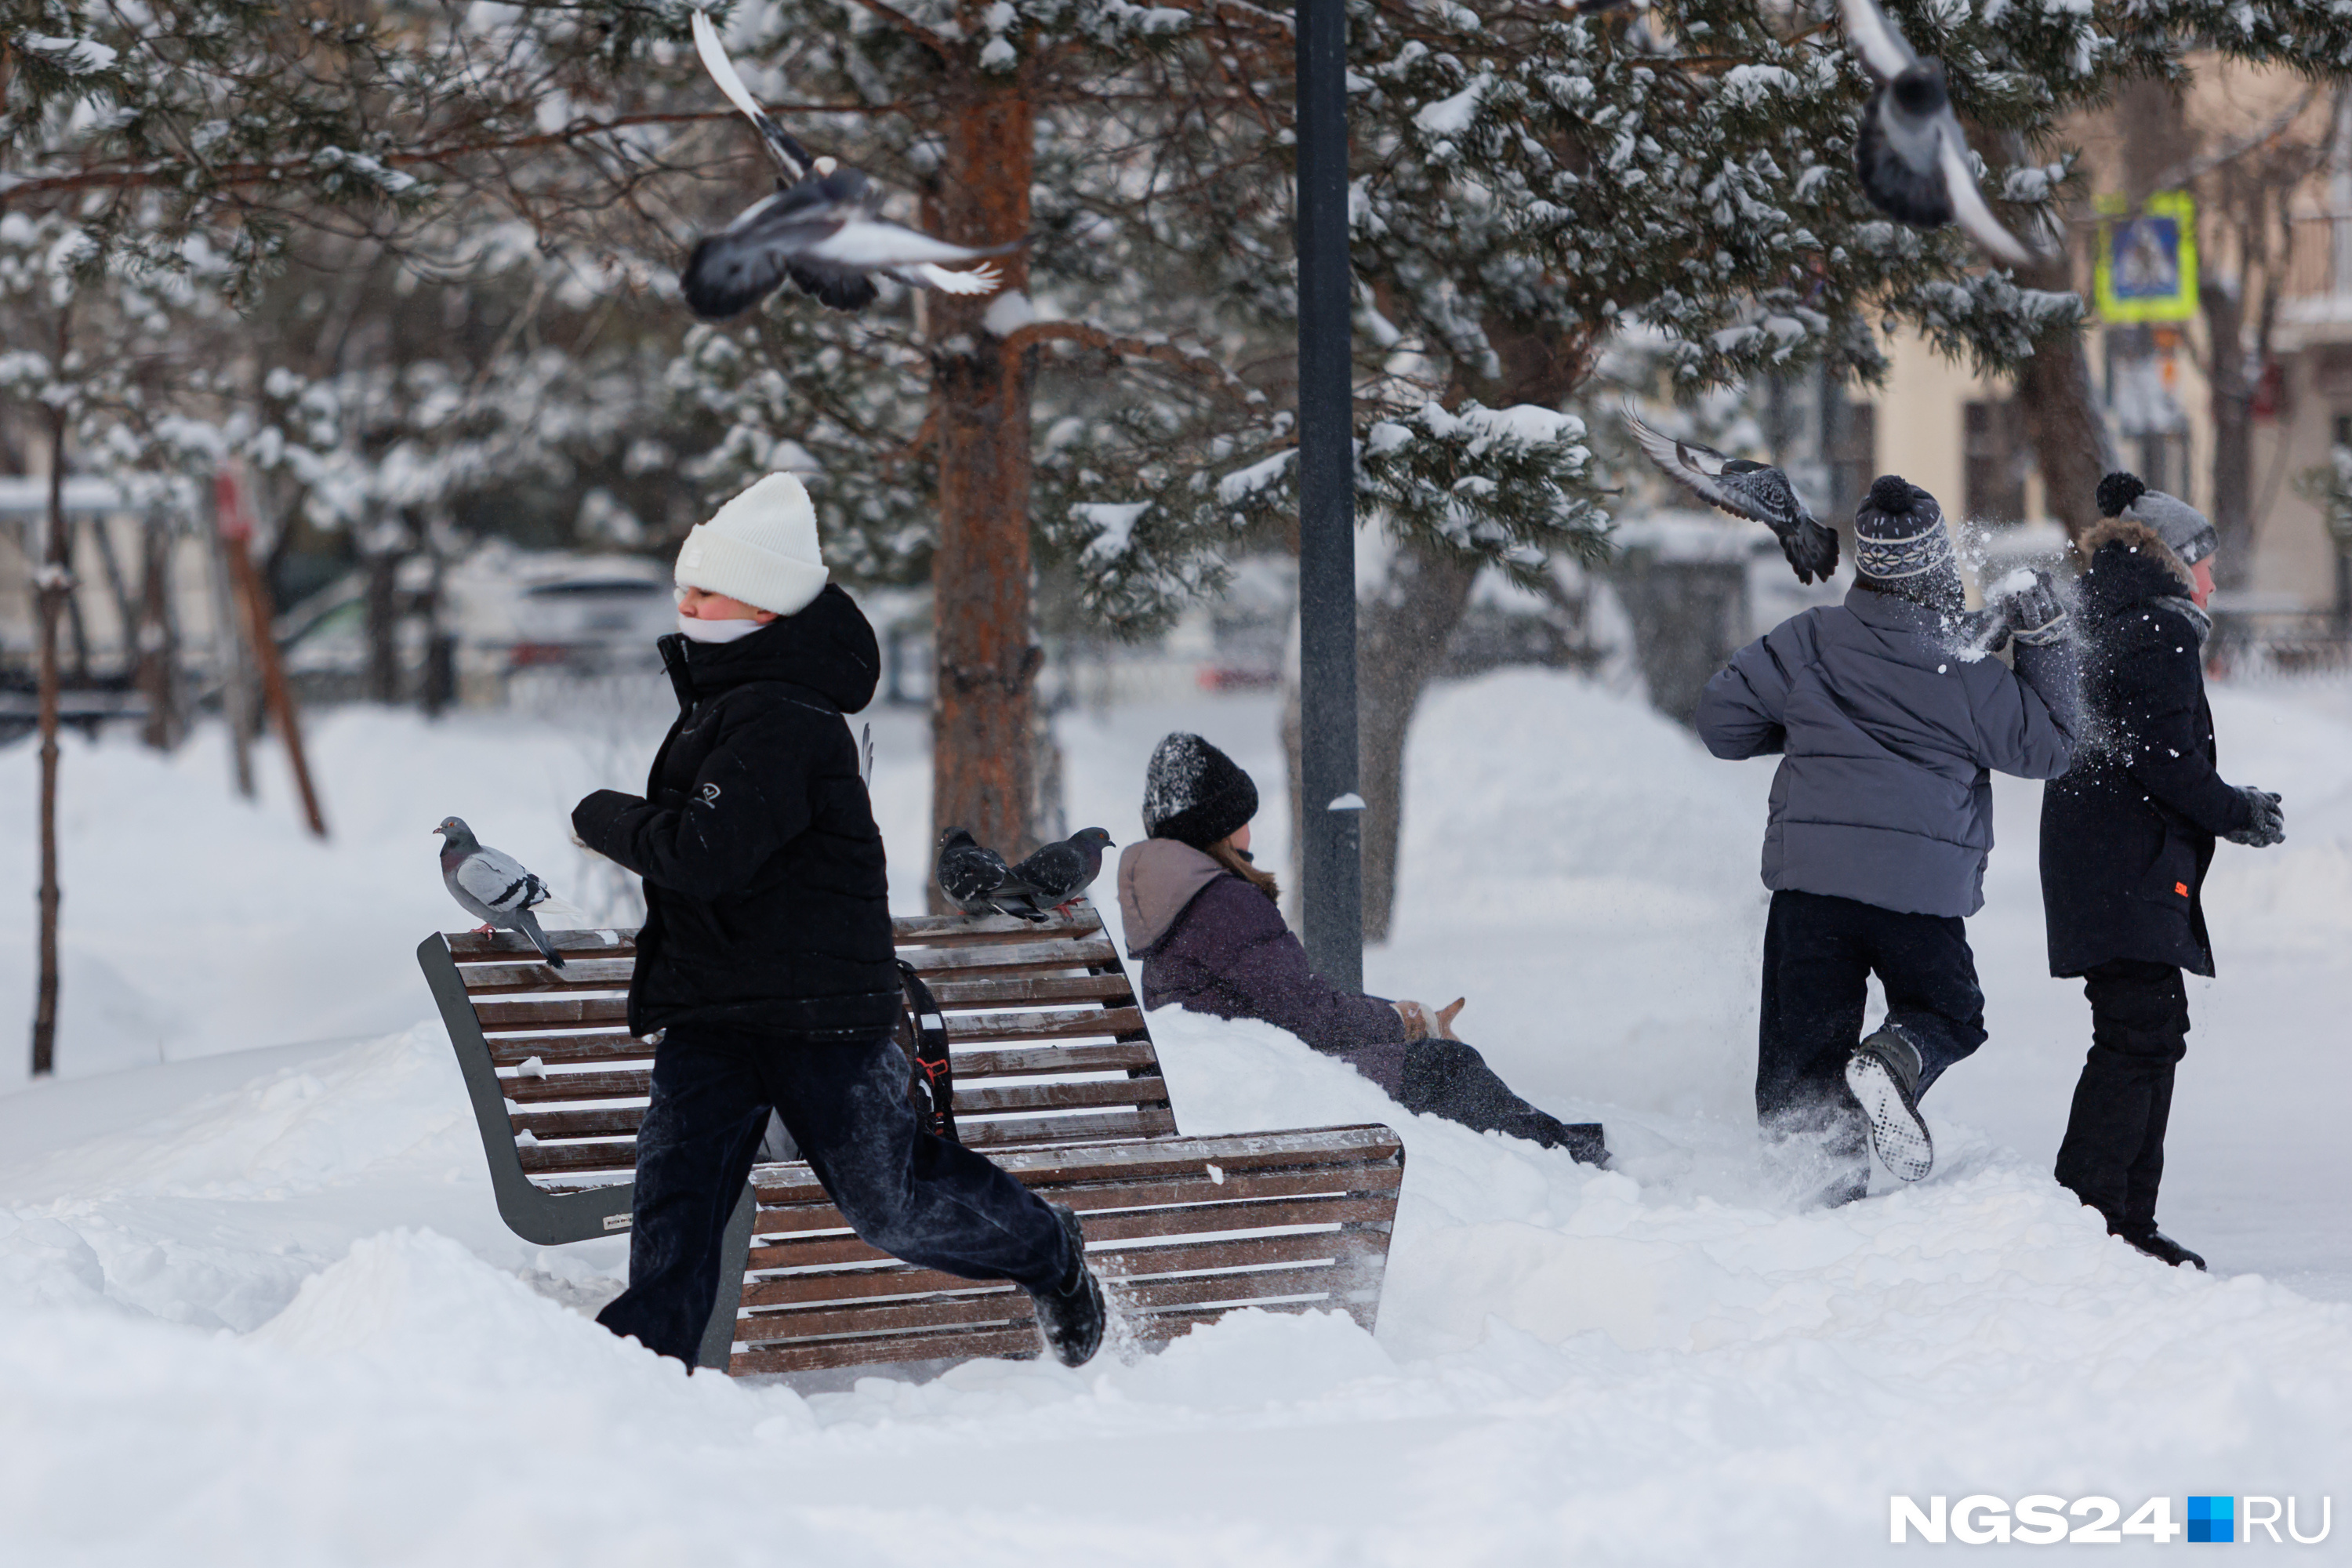 Поваляться в снегу и поиграть в снежки — самое веселое занятие для школьников после уроков